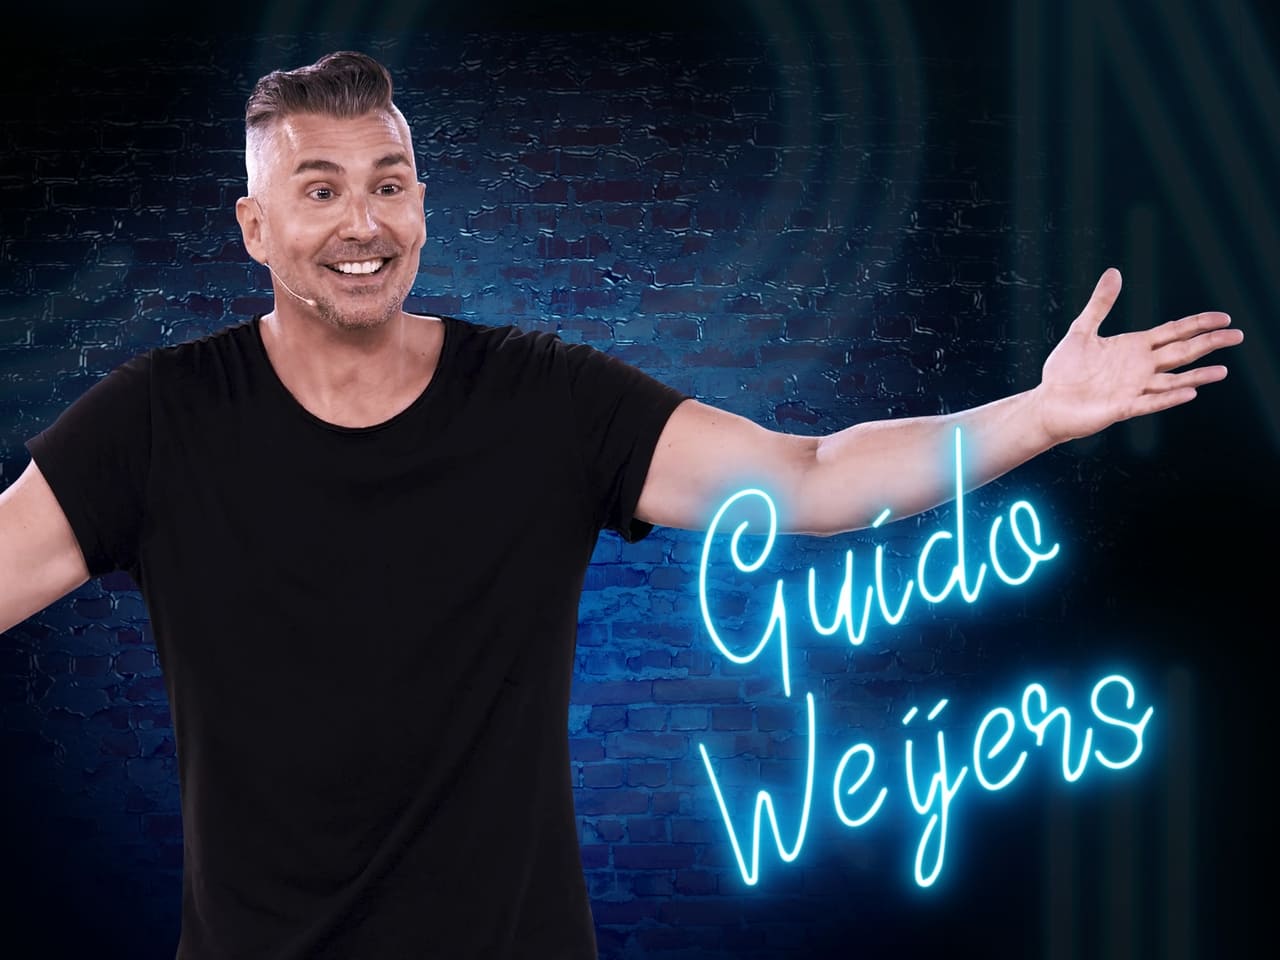 Guido Weijers